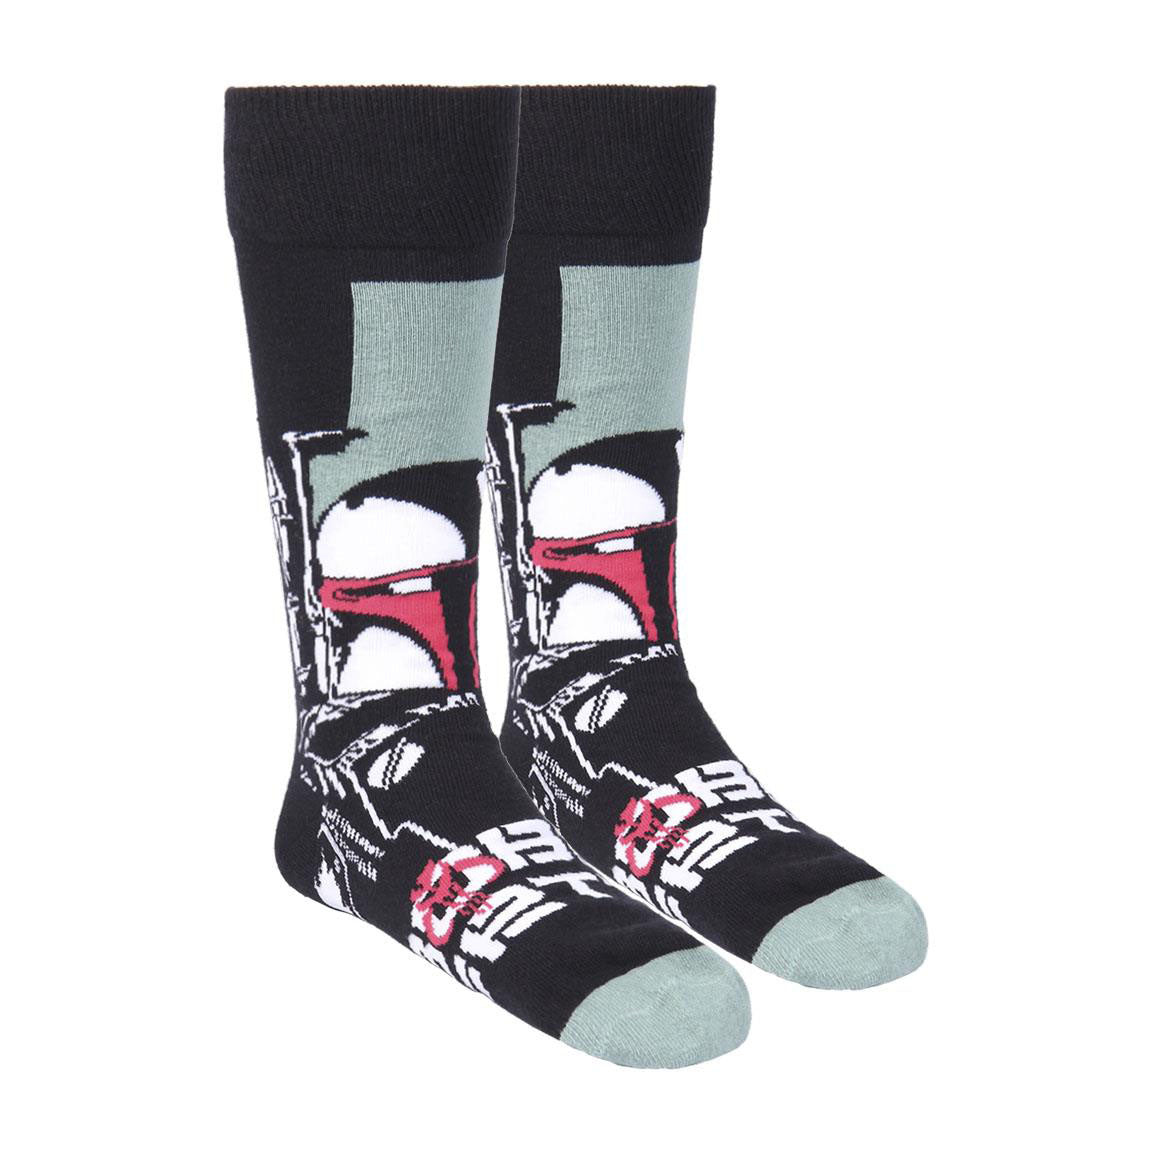 3 para čarapa Star Wars - Boba Fett